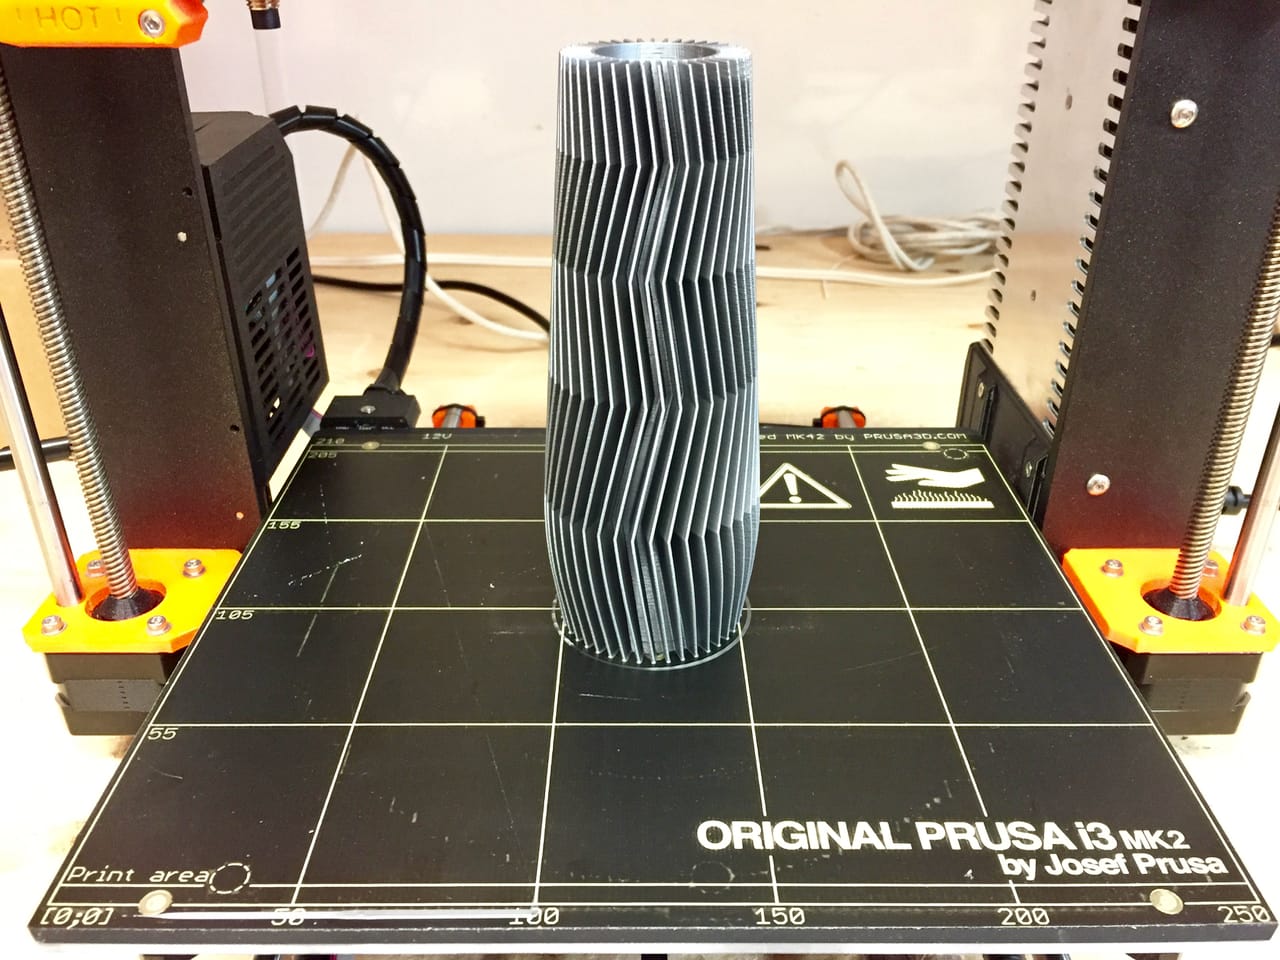  Another fine pre-sliced 3D model printed on the Original Pruse i3 desktop 3D printer 